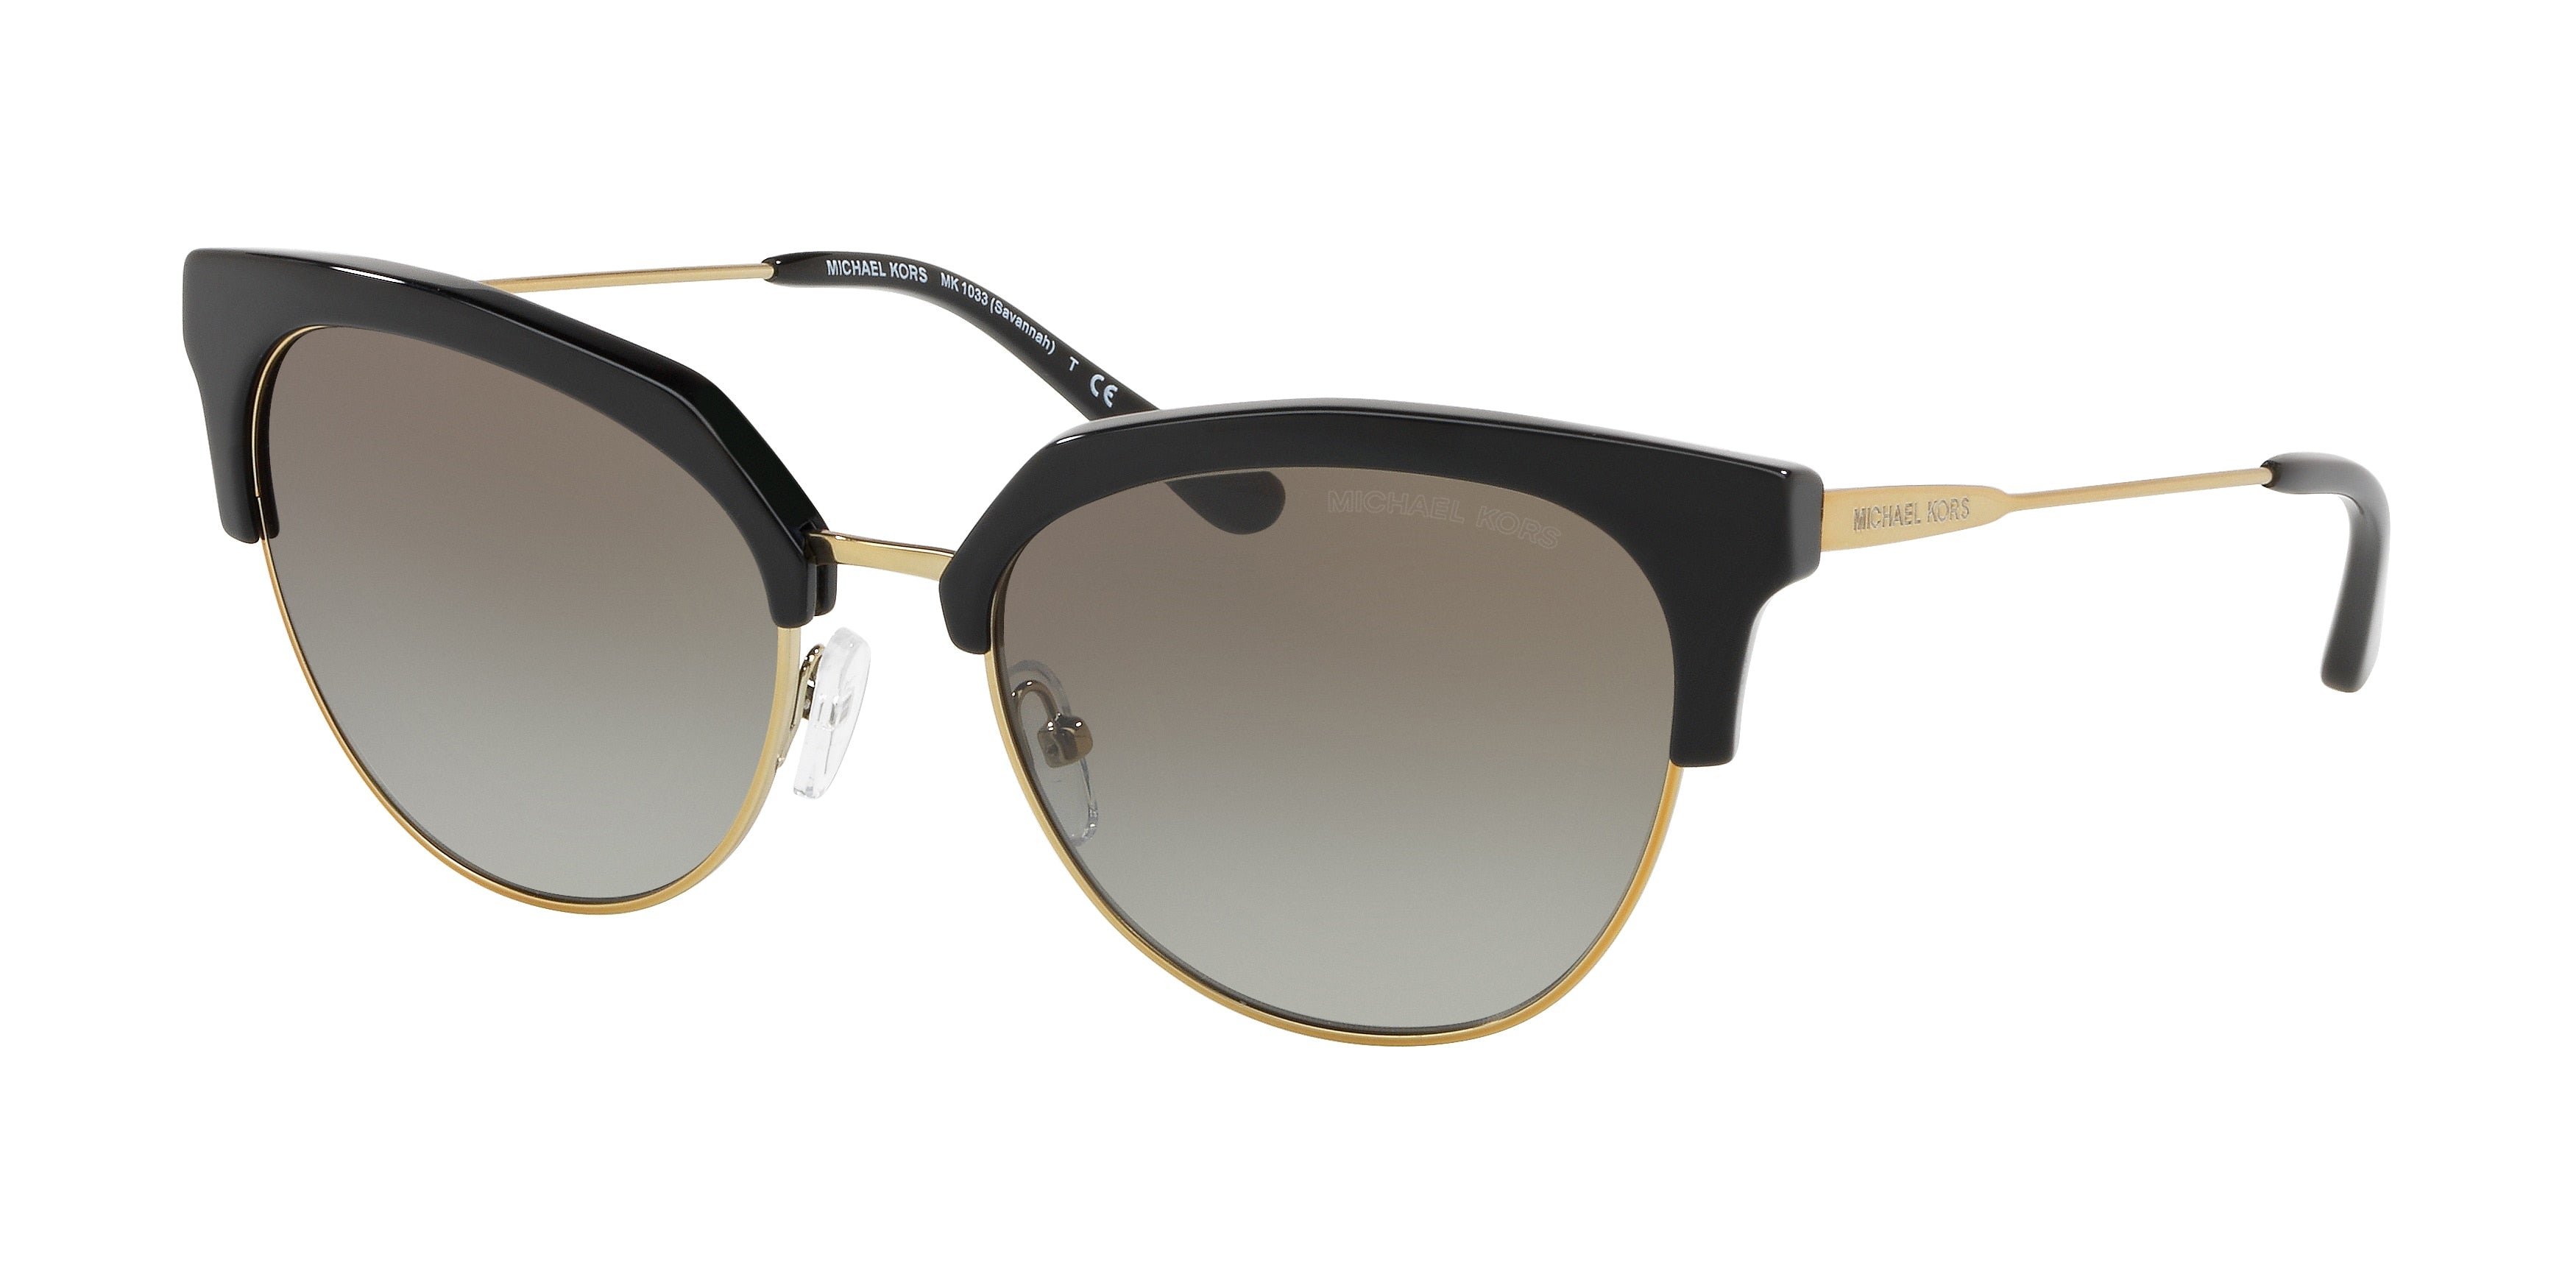 Michael Kors SAVANNAH MK1033 Irregular Sunglasses  32698E-Black/Shiny Pale Gold-Tone 54-140-18 - Color Map Black